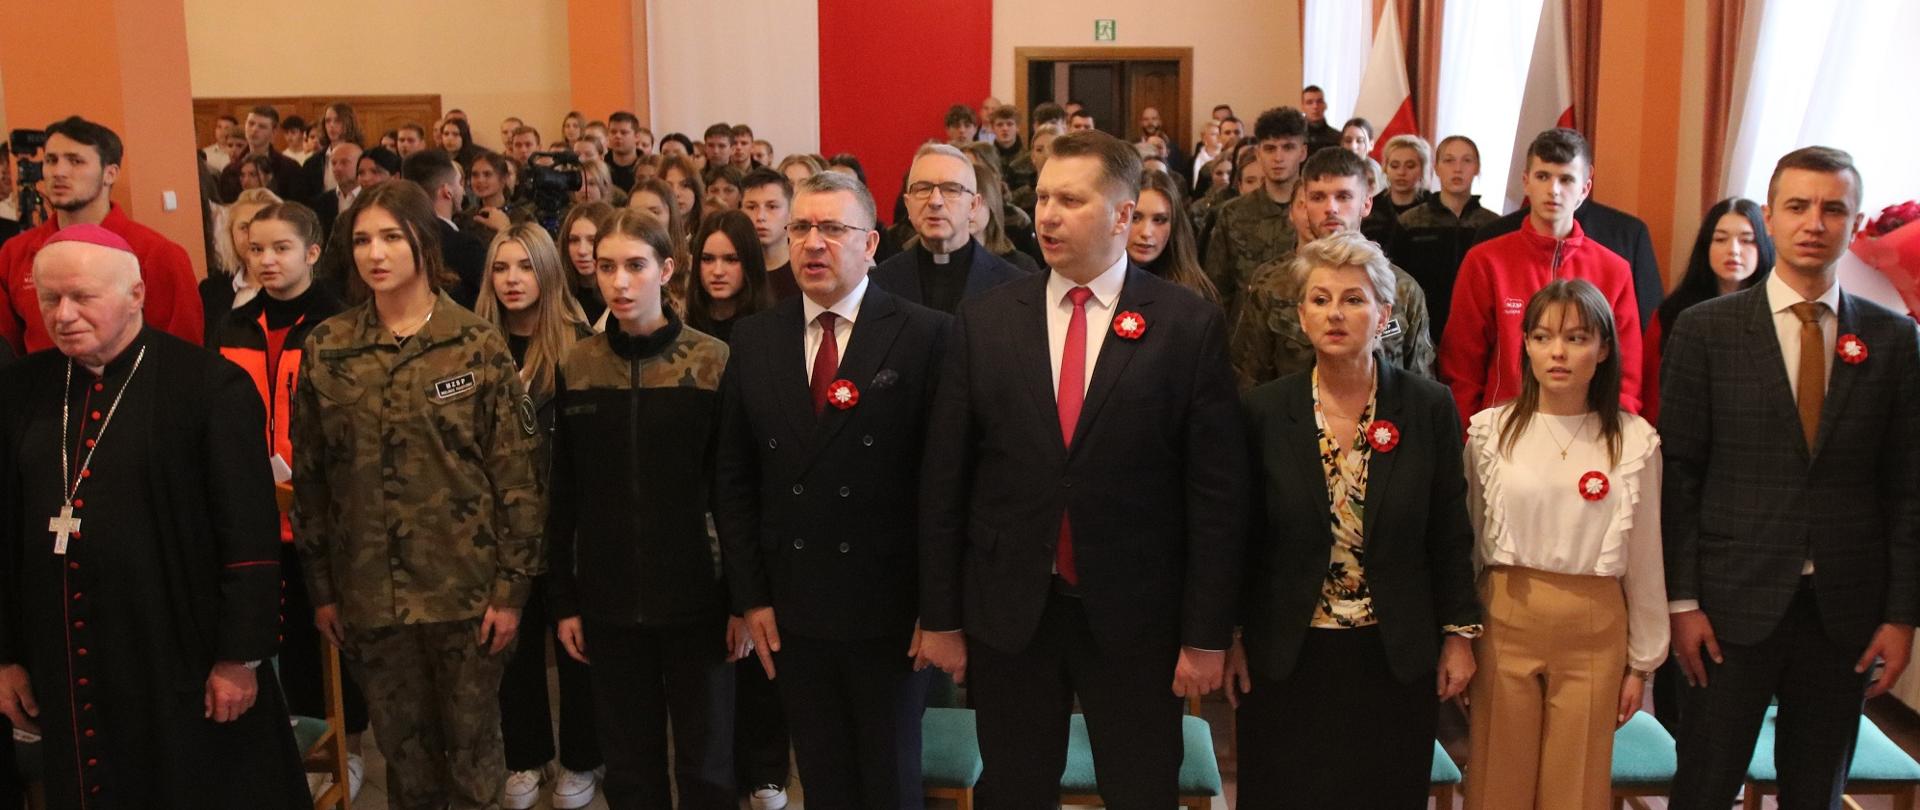 Duża grupa ludzi, wśród nim minister Czarnek, stoi w sali i śpiewa.